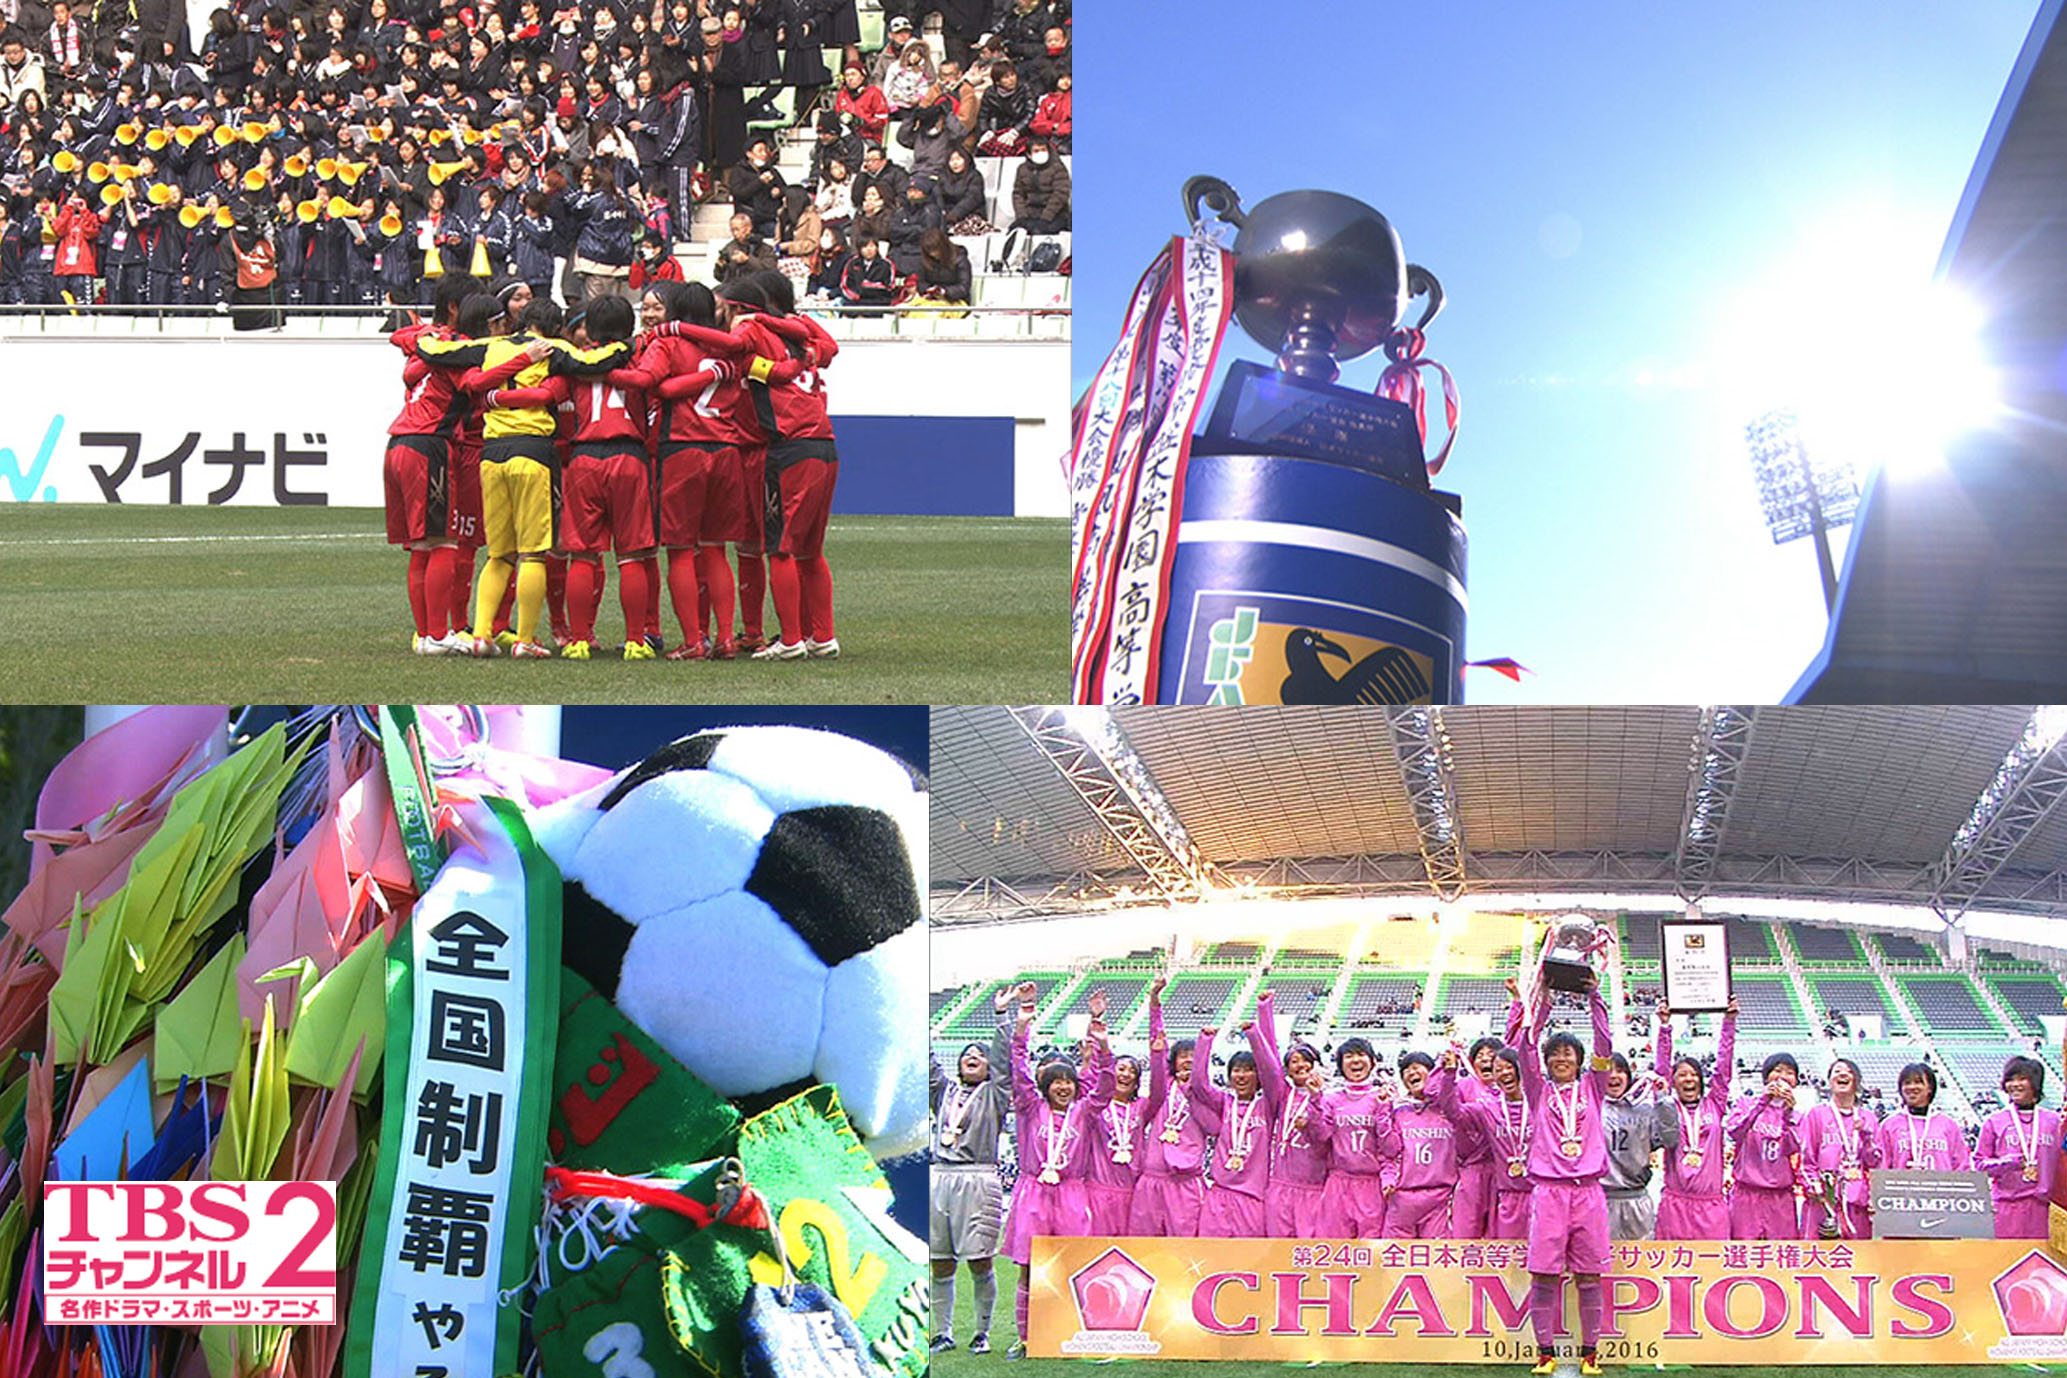 12 30 金 開幕 第25回全日本高校女子サッカー選手権 大会 未来のなでしこジャパン たちの美しくも熱き戦いをcs放送 Tbsチャンネル2で 1回戦から生中継を含め連日オンエア 株式会社tbsテレビのプレスリリース